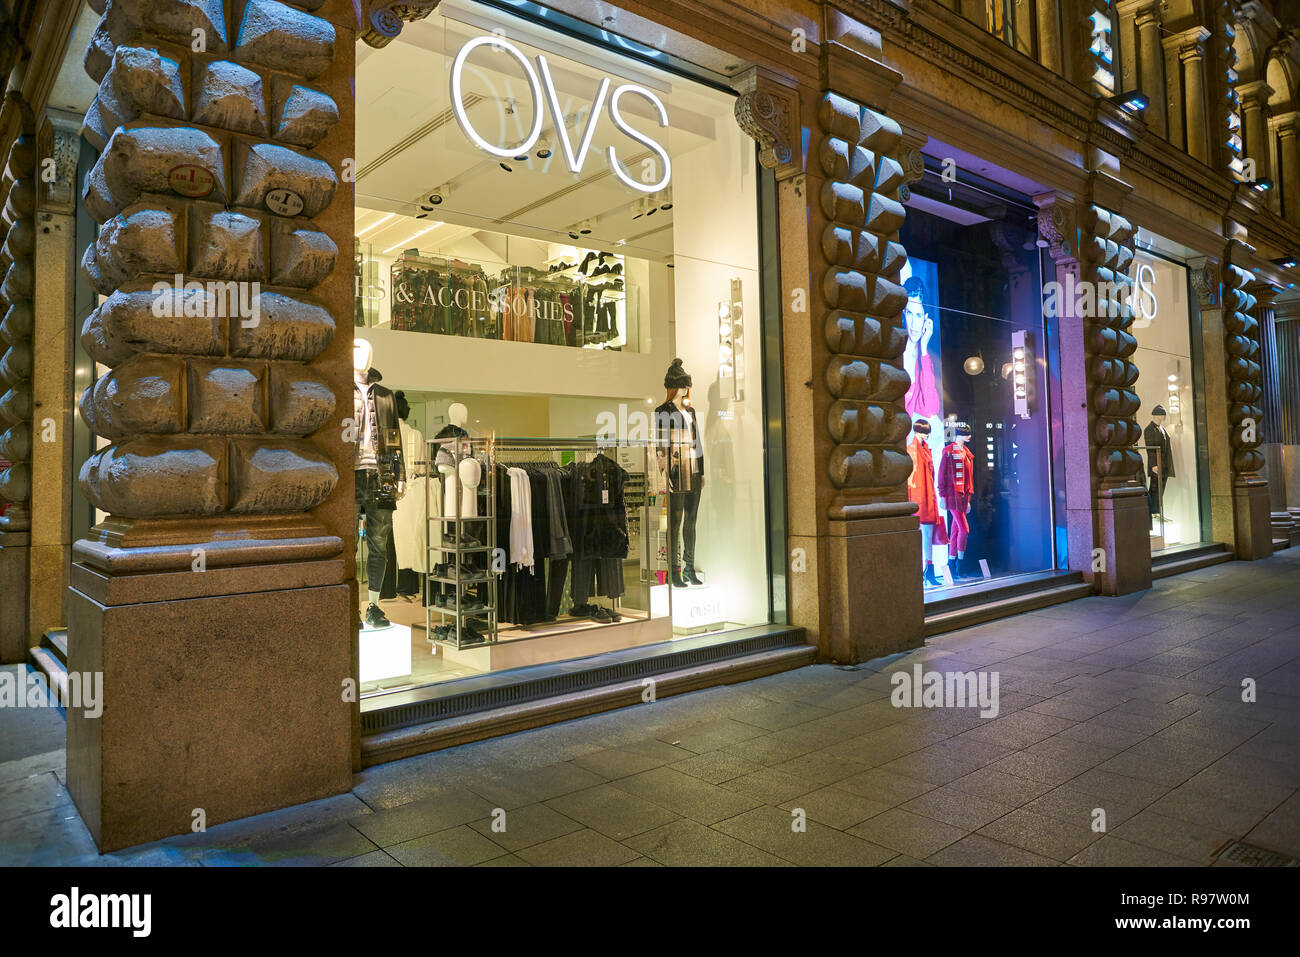 Ovs Fashion Store Stockfotos und -bilder Kaufen - Alamy